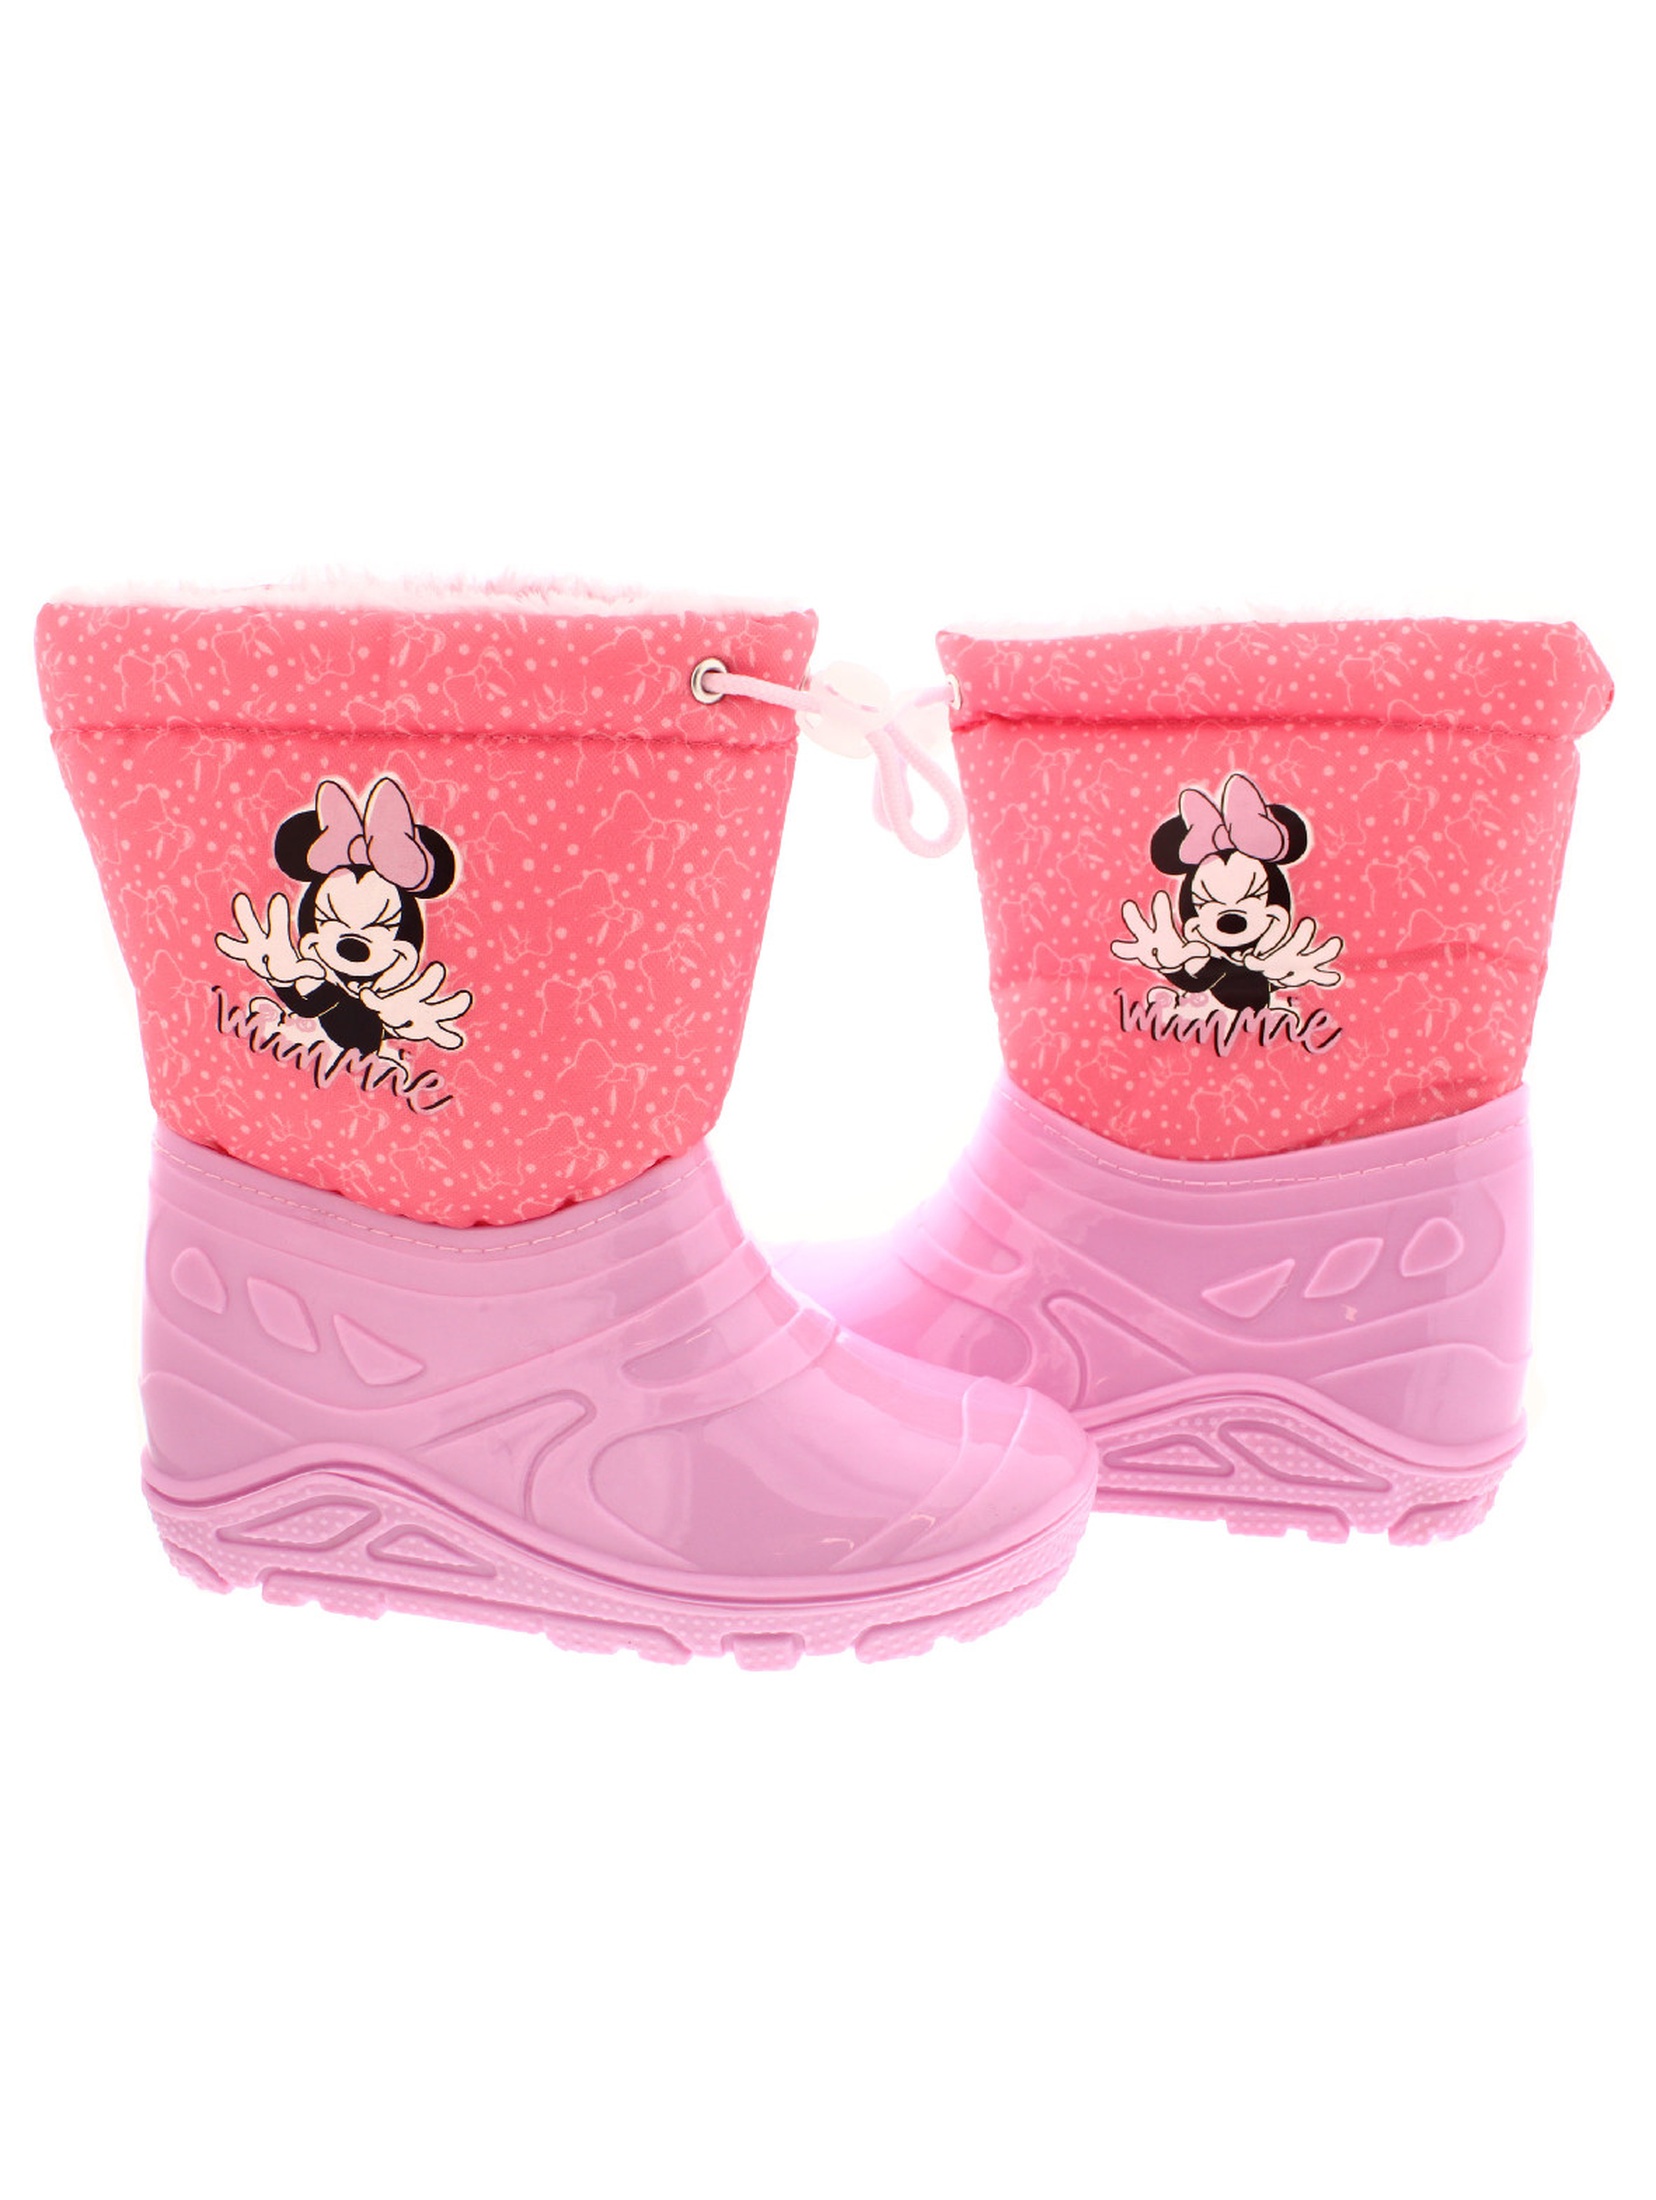 Różowe buty zimowe dla dziewczynki Minnie